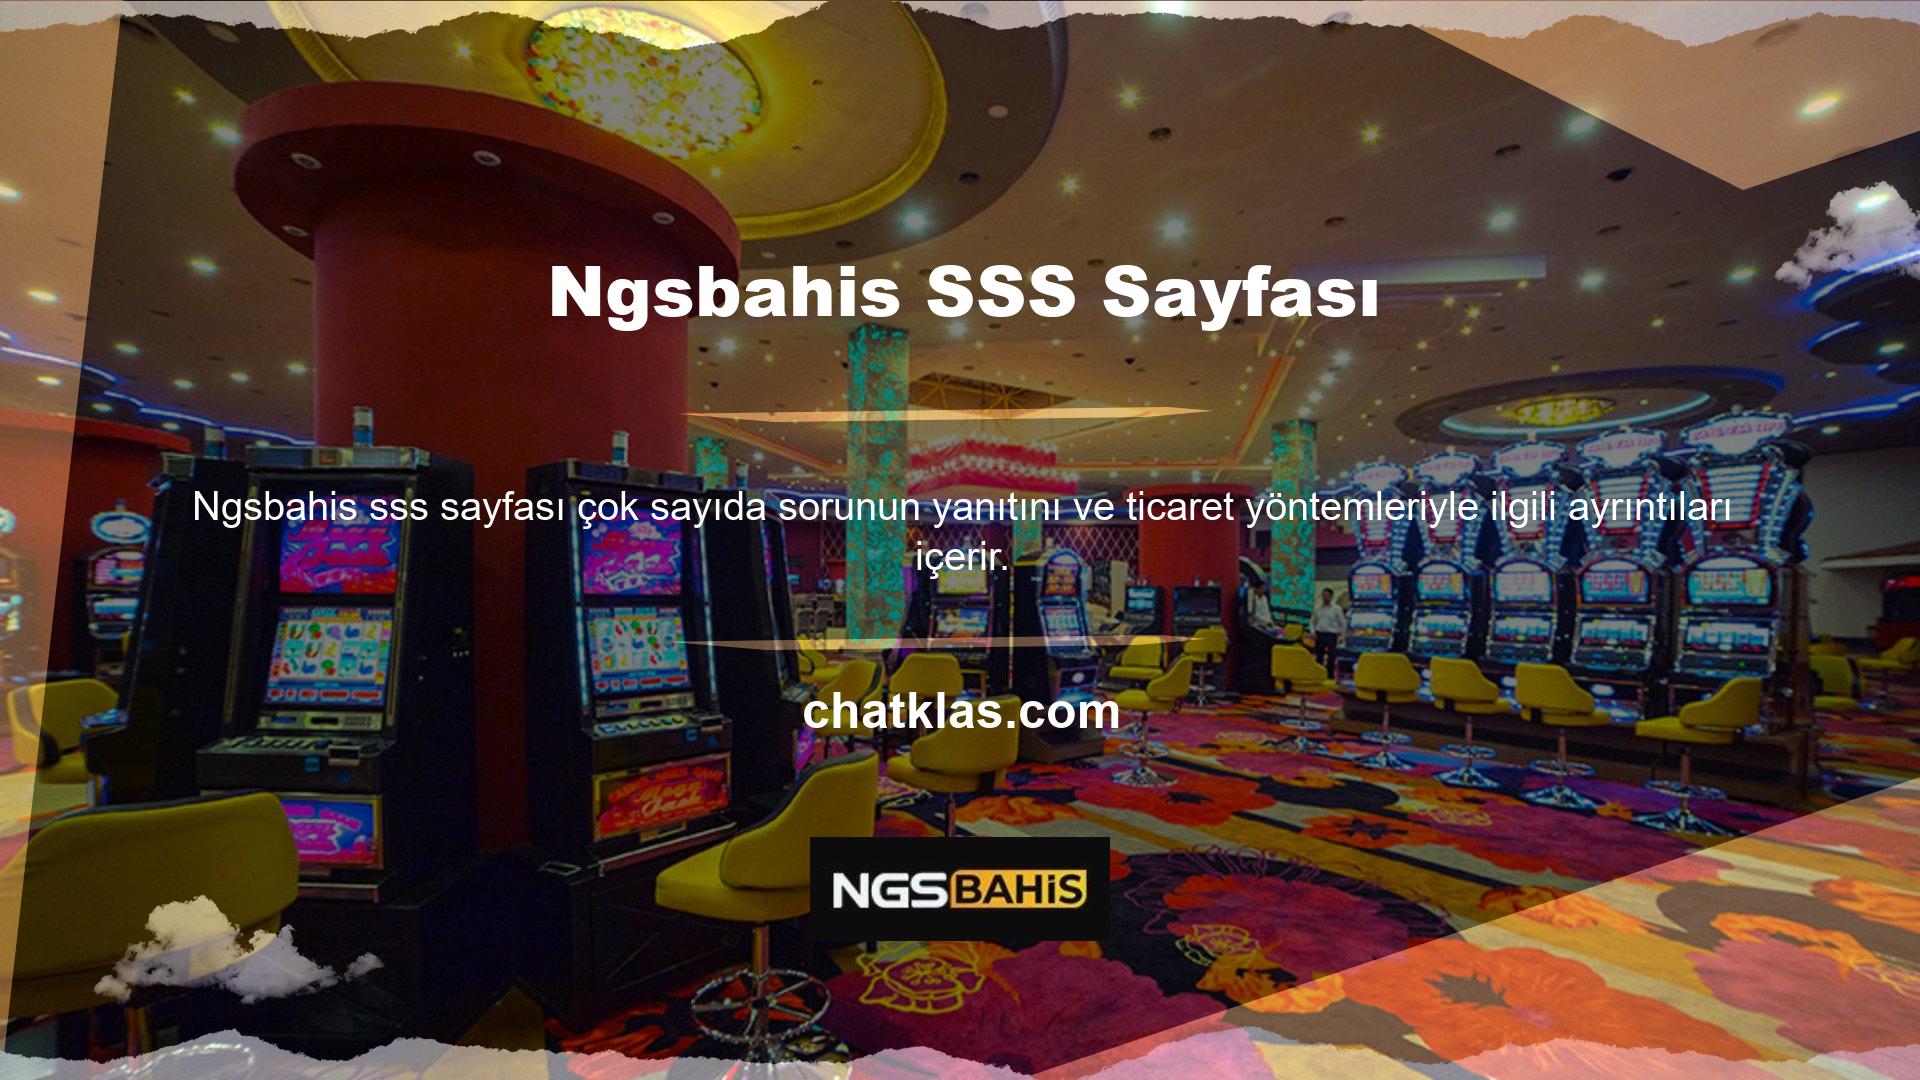 Ngsbahis, çevrimiçi casino pazarında, üyelerinin çıkarlarını ön planda tutan ve bilgilerinin tüm kullanıcılara ulaşmasını sağlayan güvenilir bir casino sitesidir